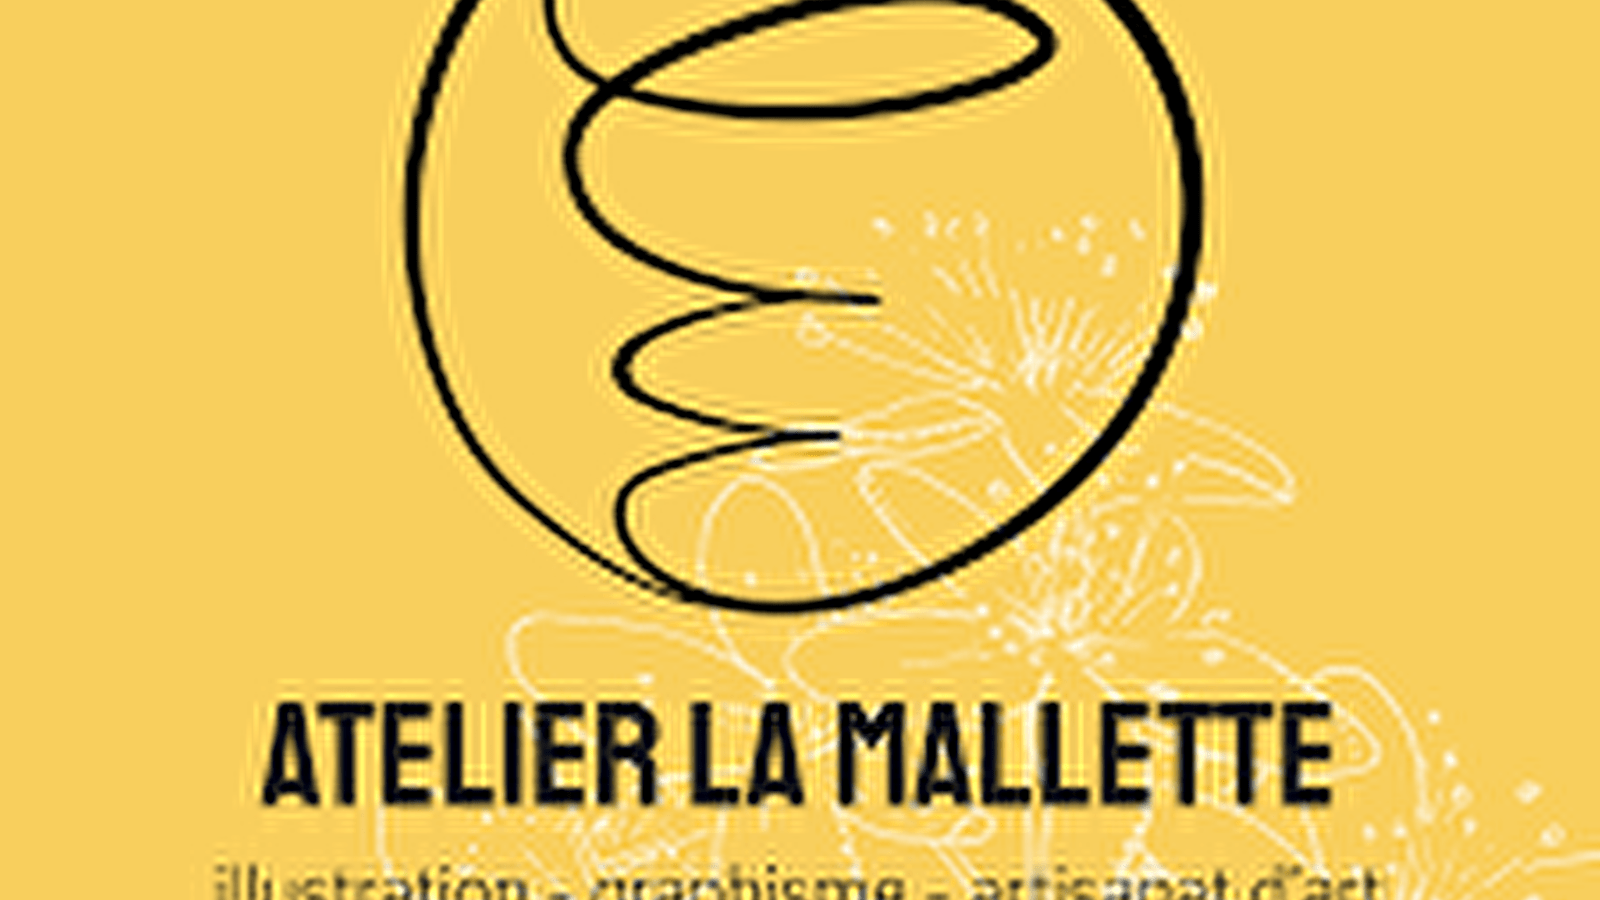 Atelier La Mallette - Lucie Deck